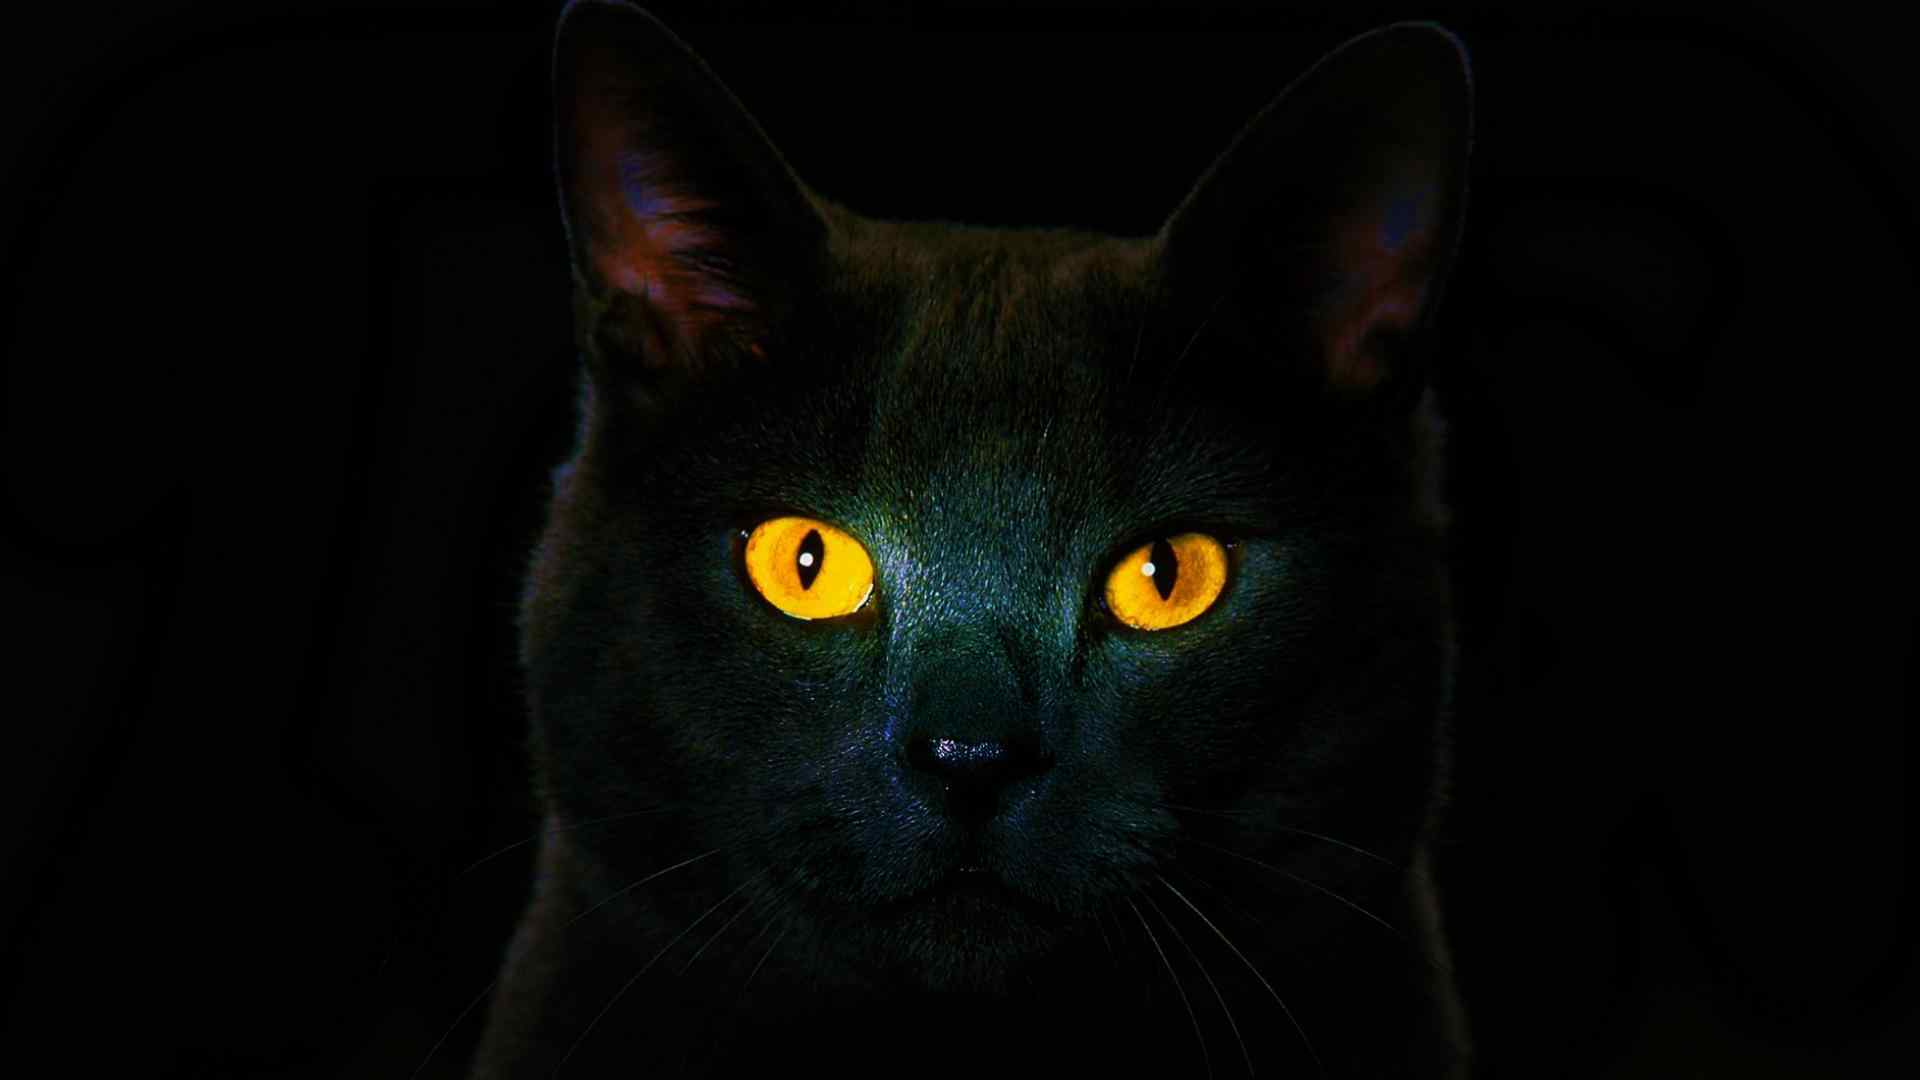 黑猫锐利眼神高清图片桌面壁纸